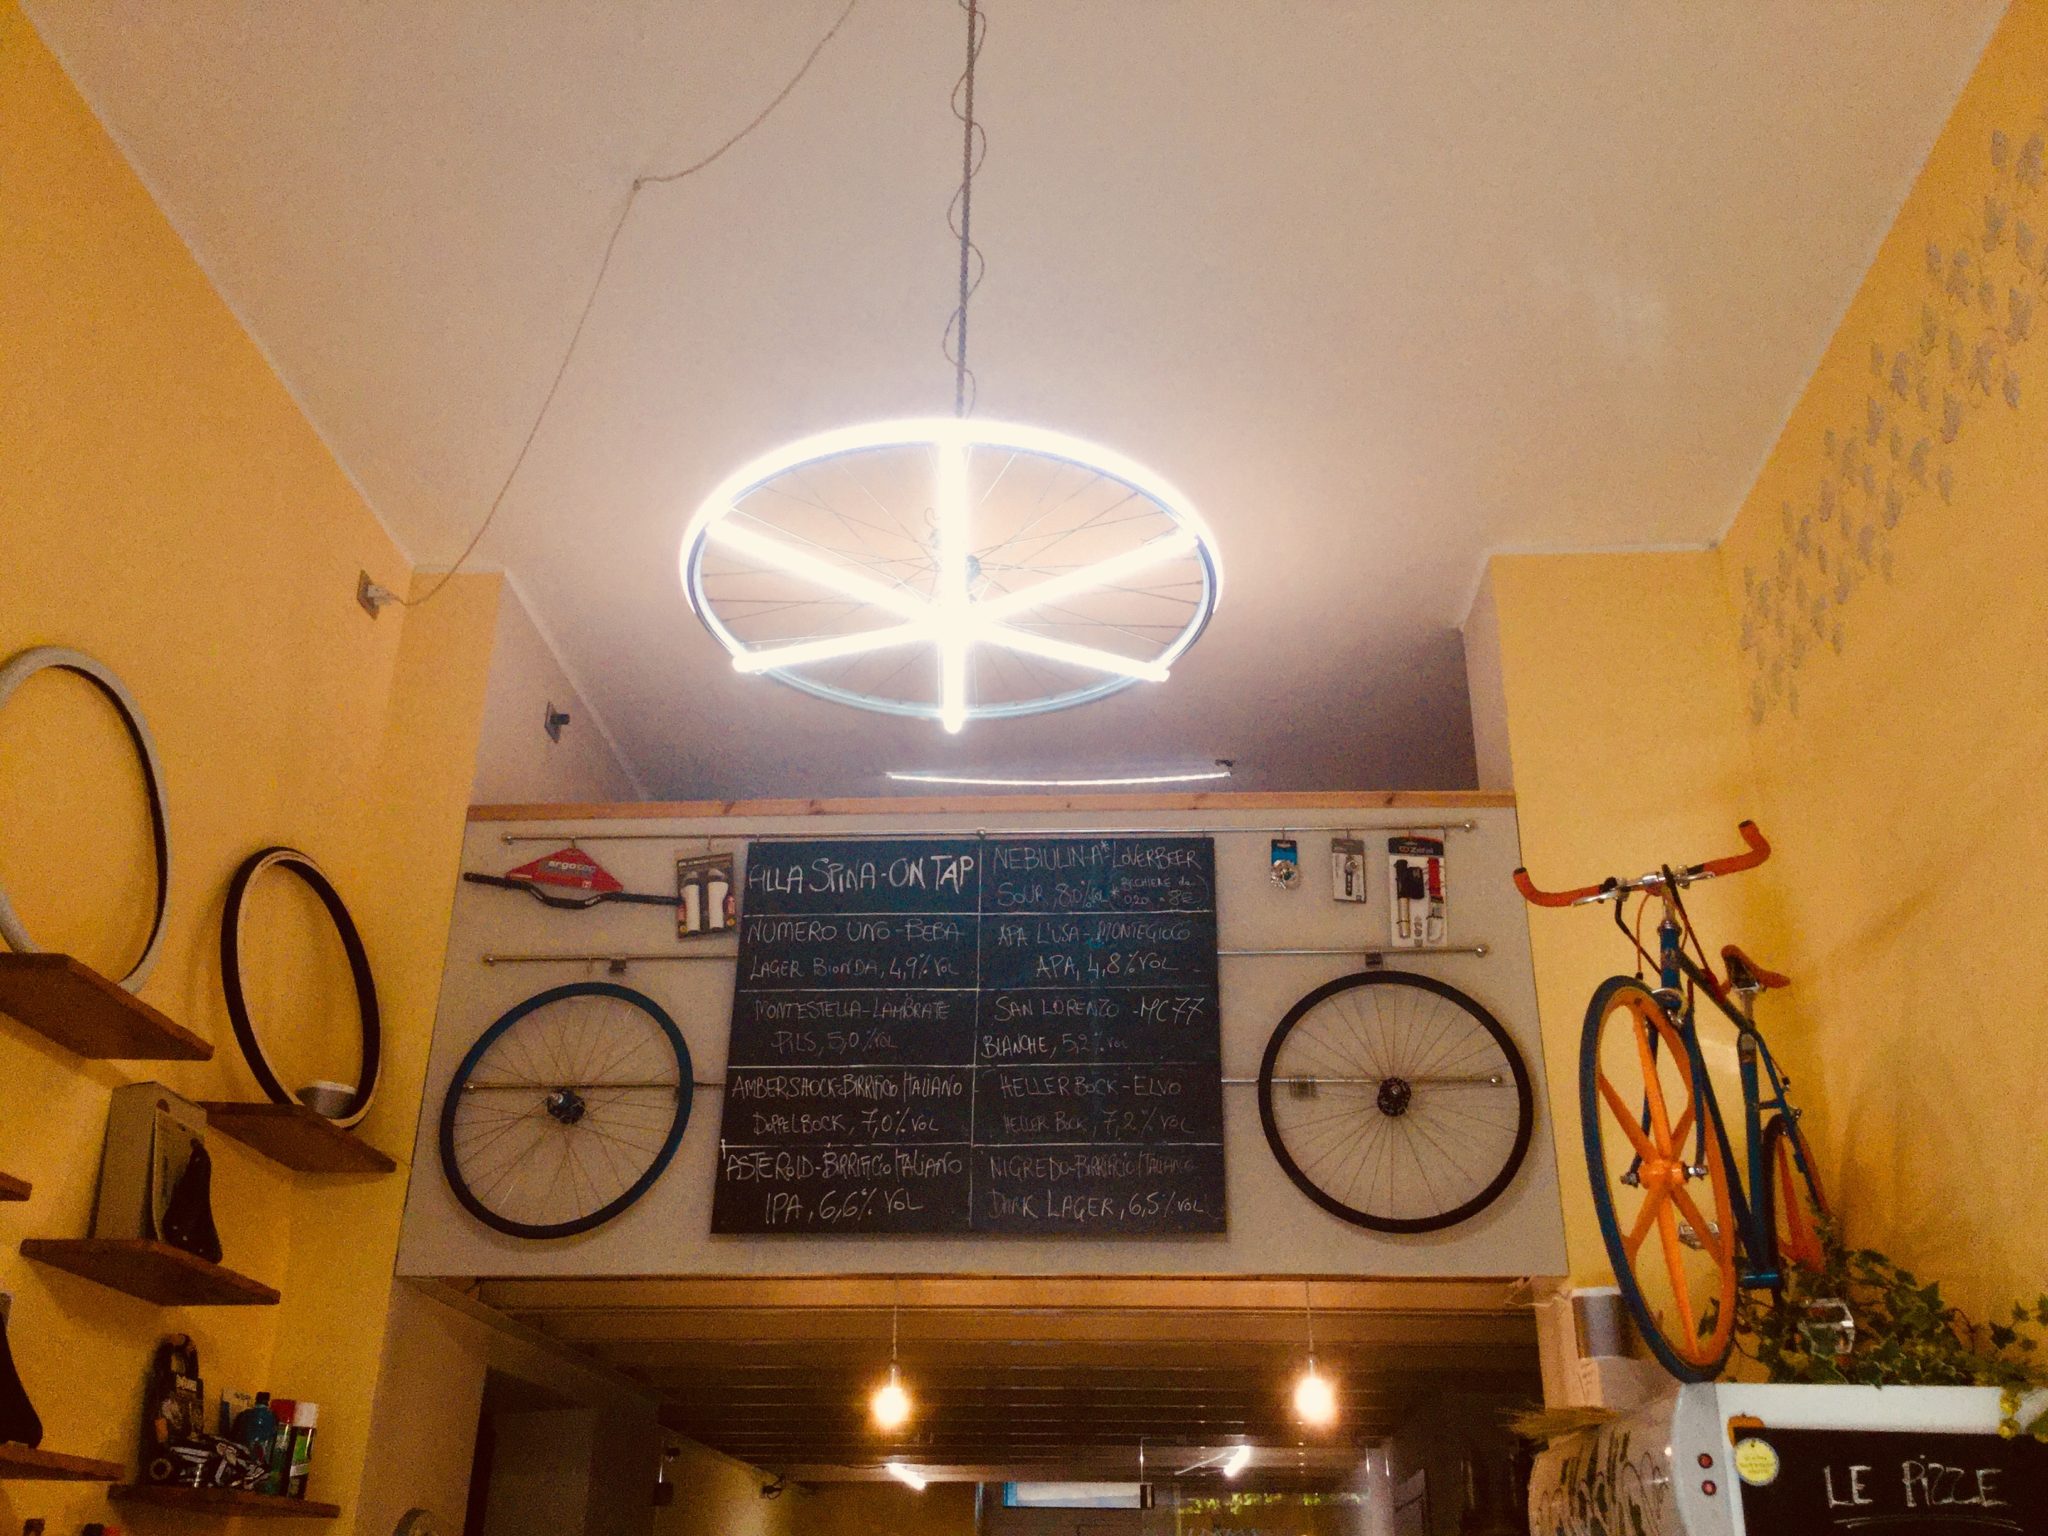 Si riparano biciclette, ci si ripara dall'inverno con tapas e birre artigianali. Bici&Birra a Torino unisce le passioni per il pedali e per il malto